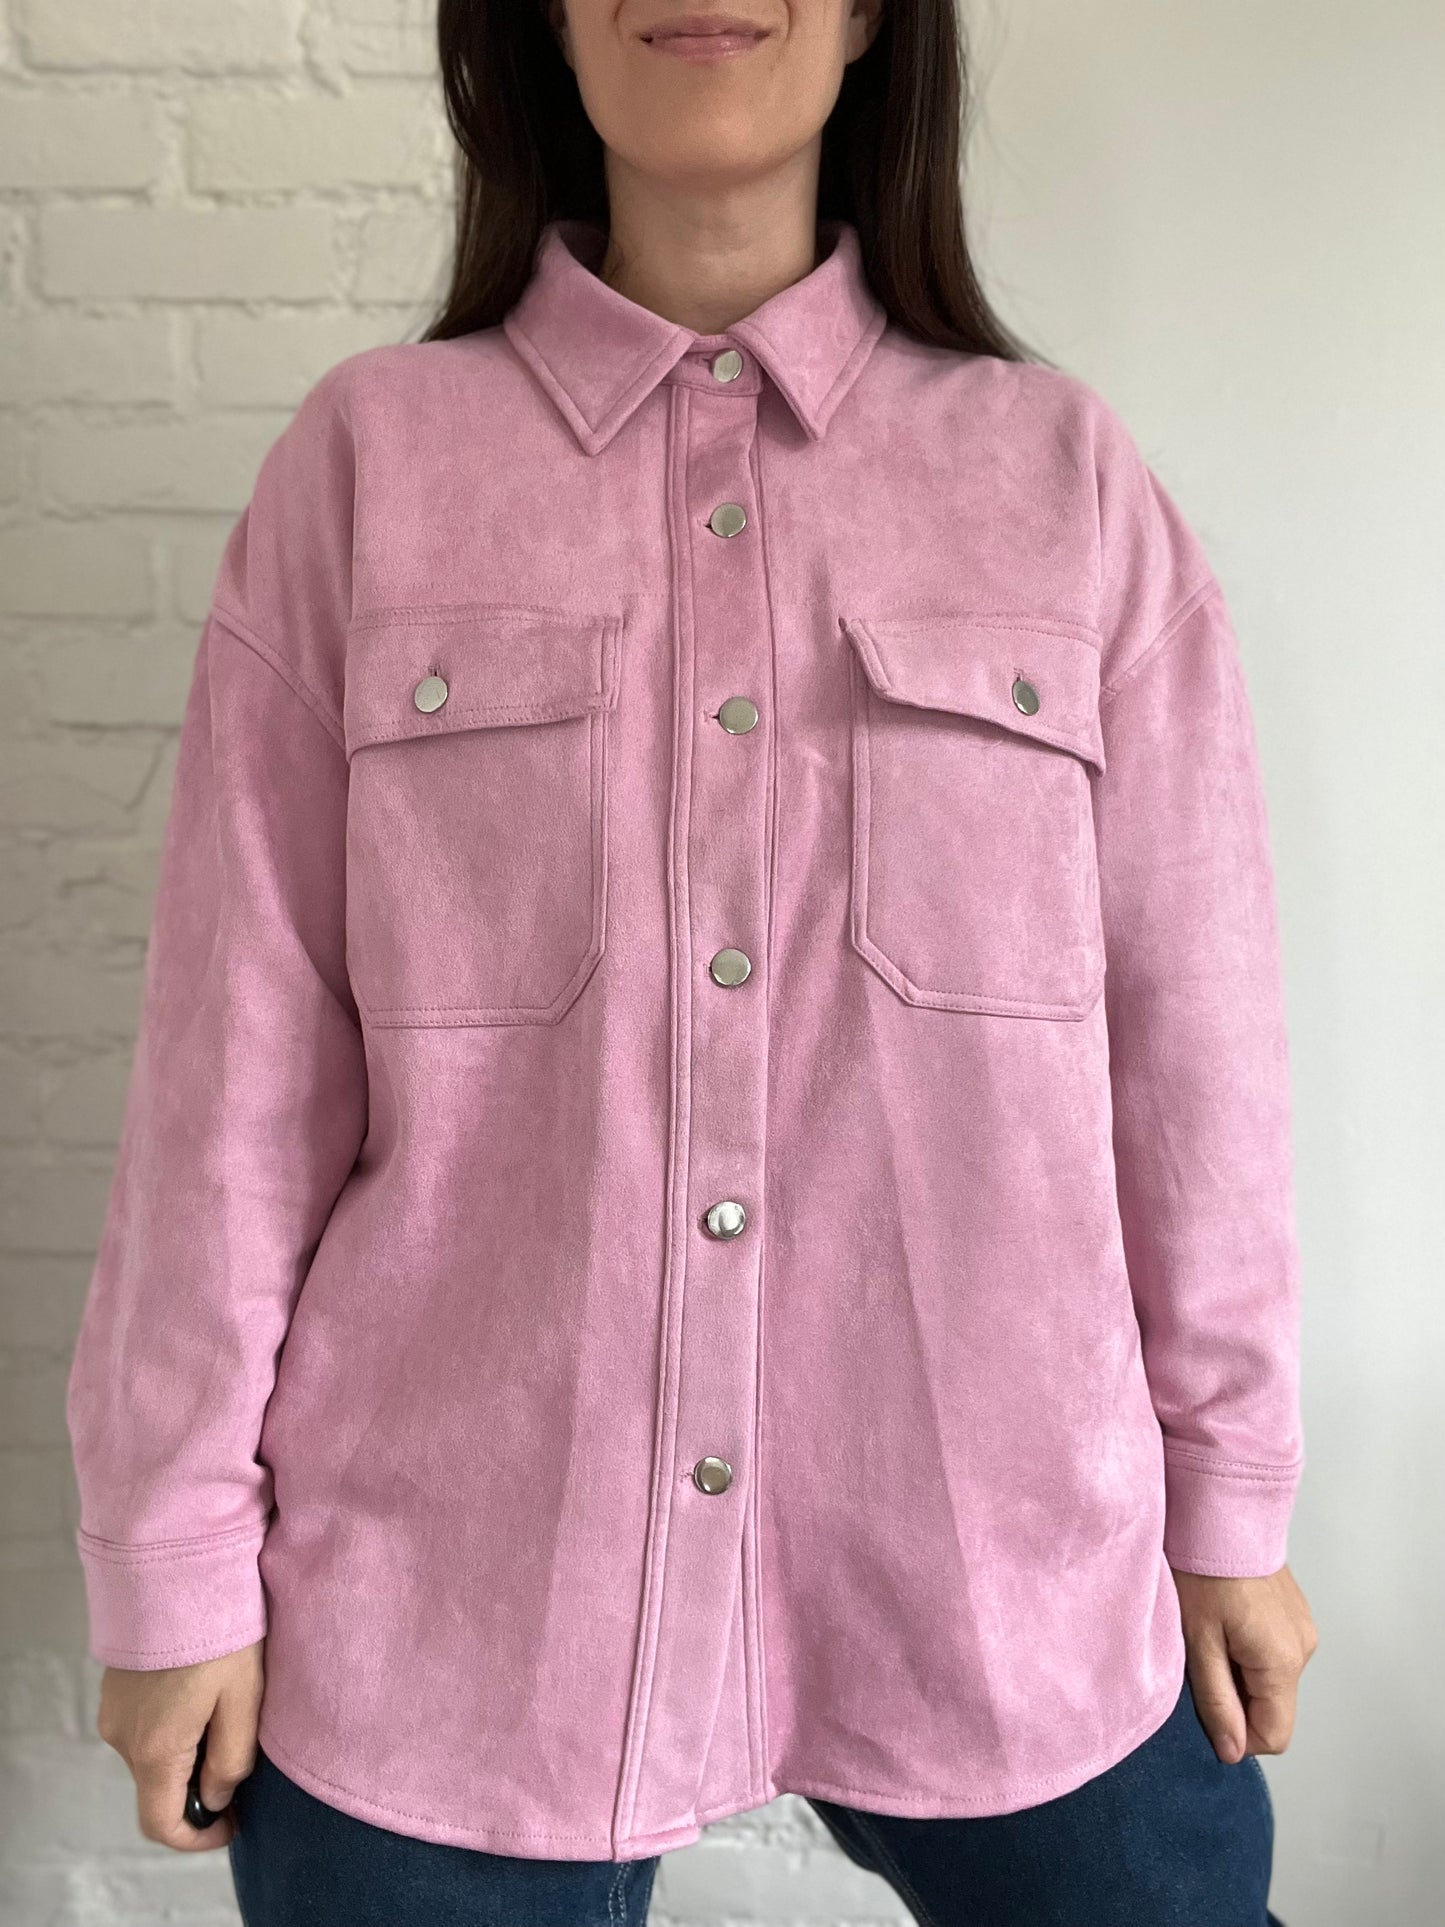 Bubblegum Pink Faux Suede Shacket - Size XL